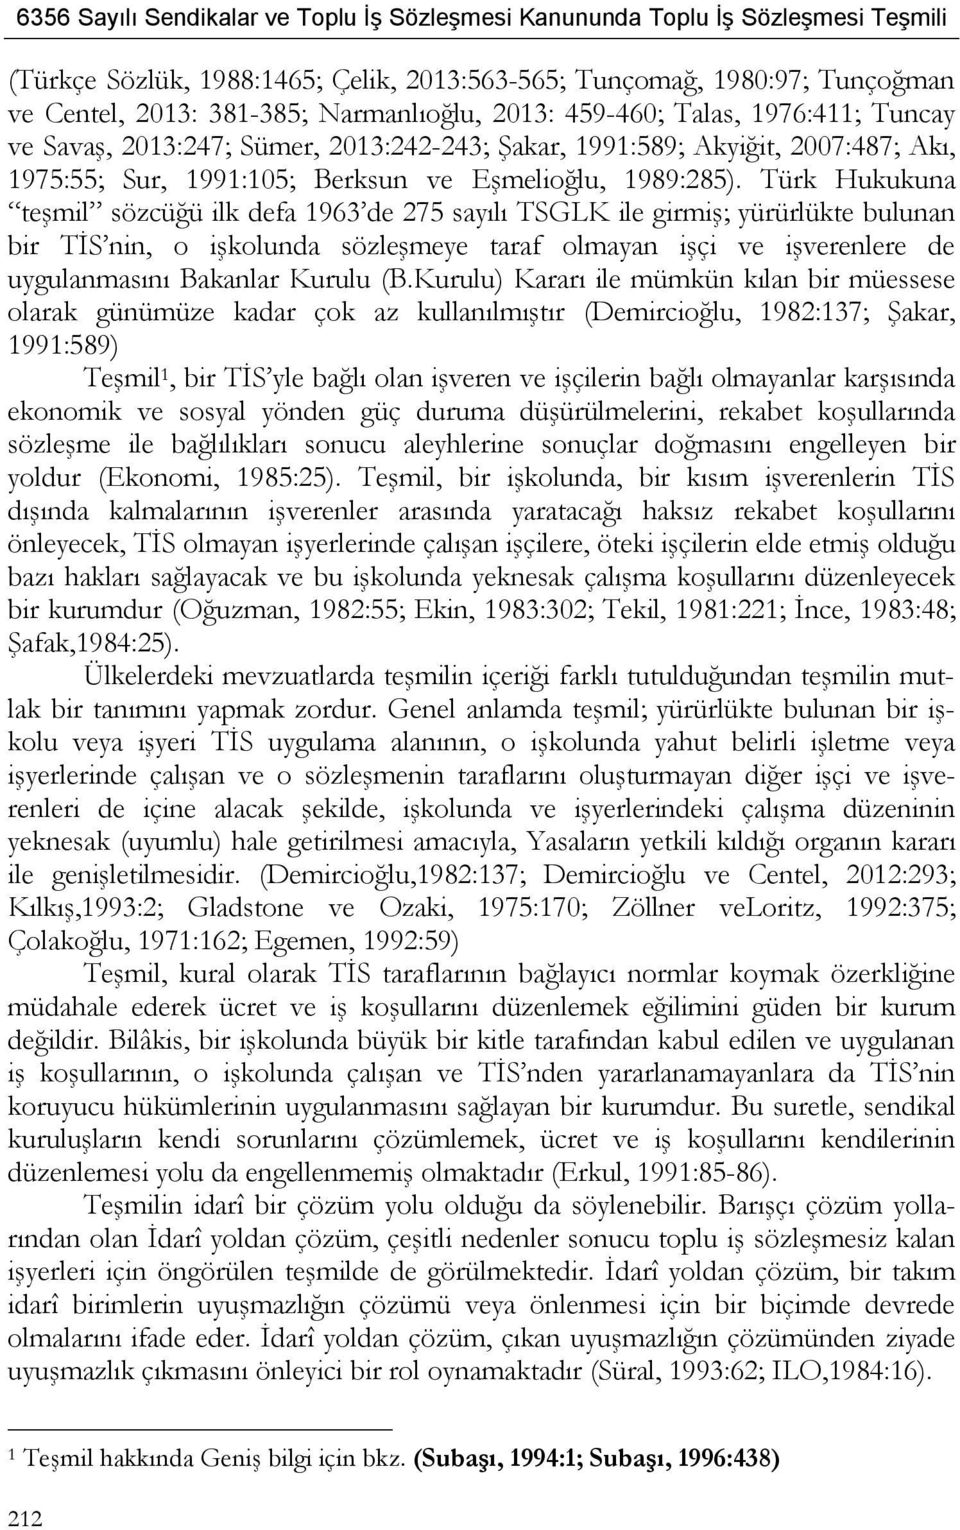 Türk Hukukuna teşmil sözcüğü ilk defa 1963 de 275 sayılı TSGLK ile girmiş; yürürlükte bulunan bir TİS nin, o işkolunda sözleşmeye taraf olmayan işçi ve işverenlere de uygulanmasını Bakanlar Kurulu (B.